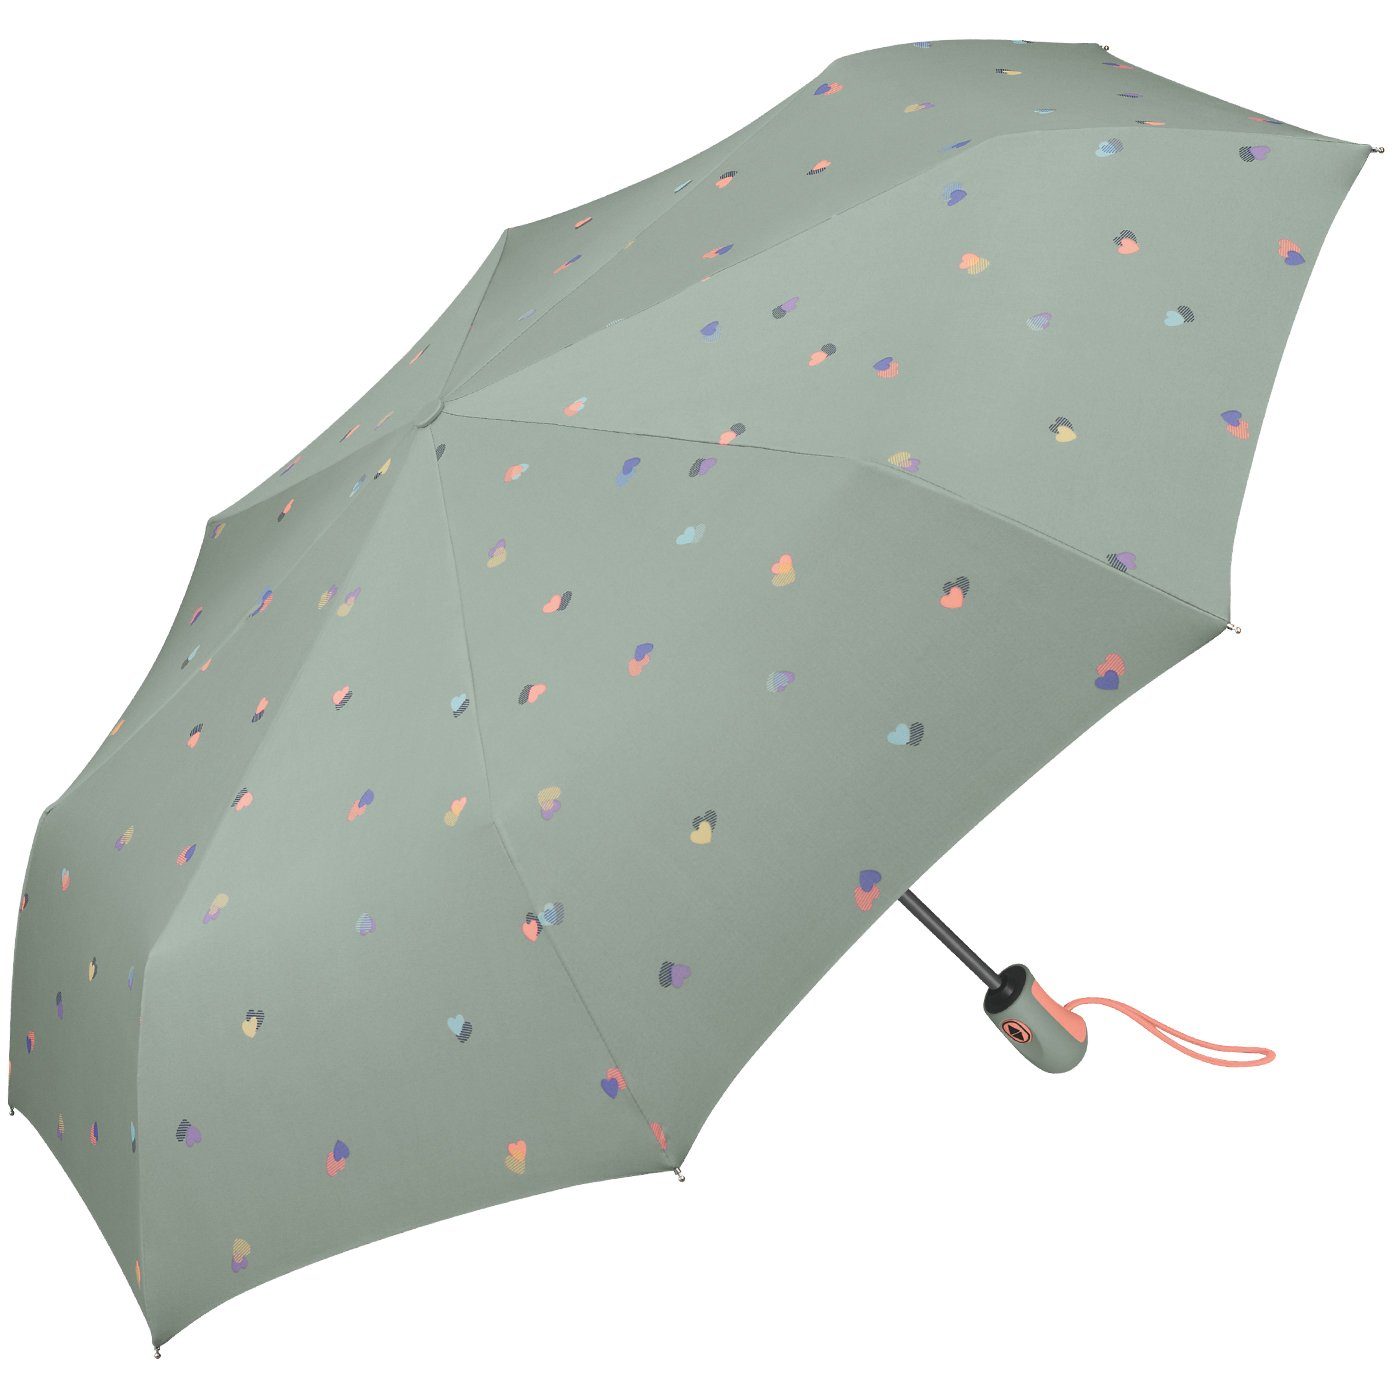 Esprit Taschenregenschirm schöner Schirm mit Auf-Zu - leicht Damen grau stabil, Automatik, Herzen-Motiv für mit